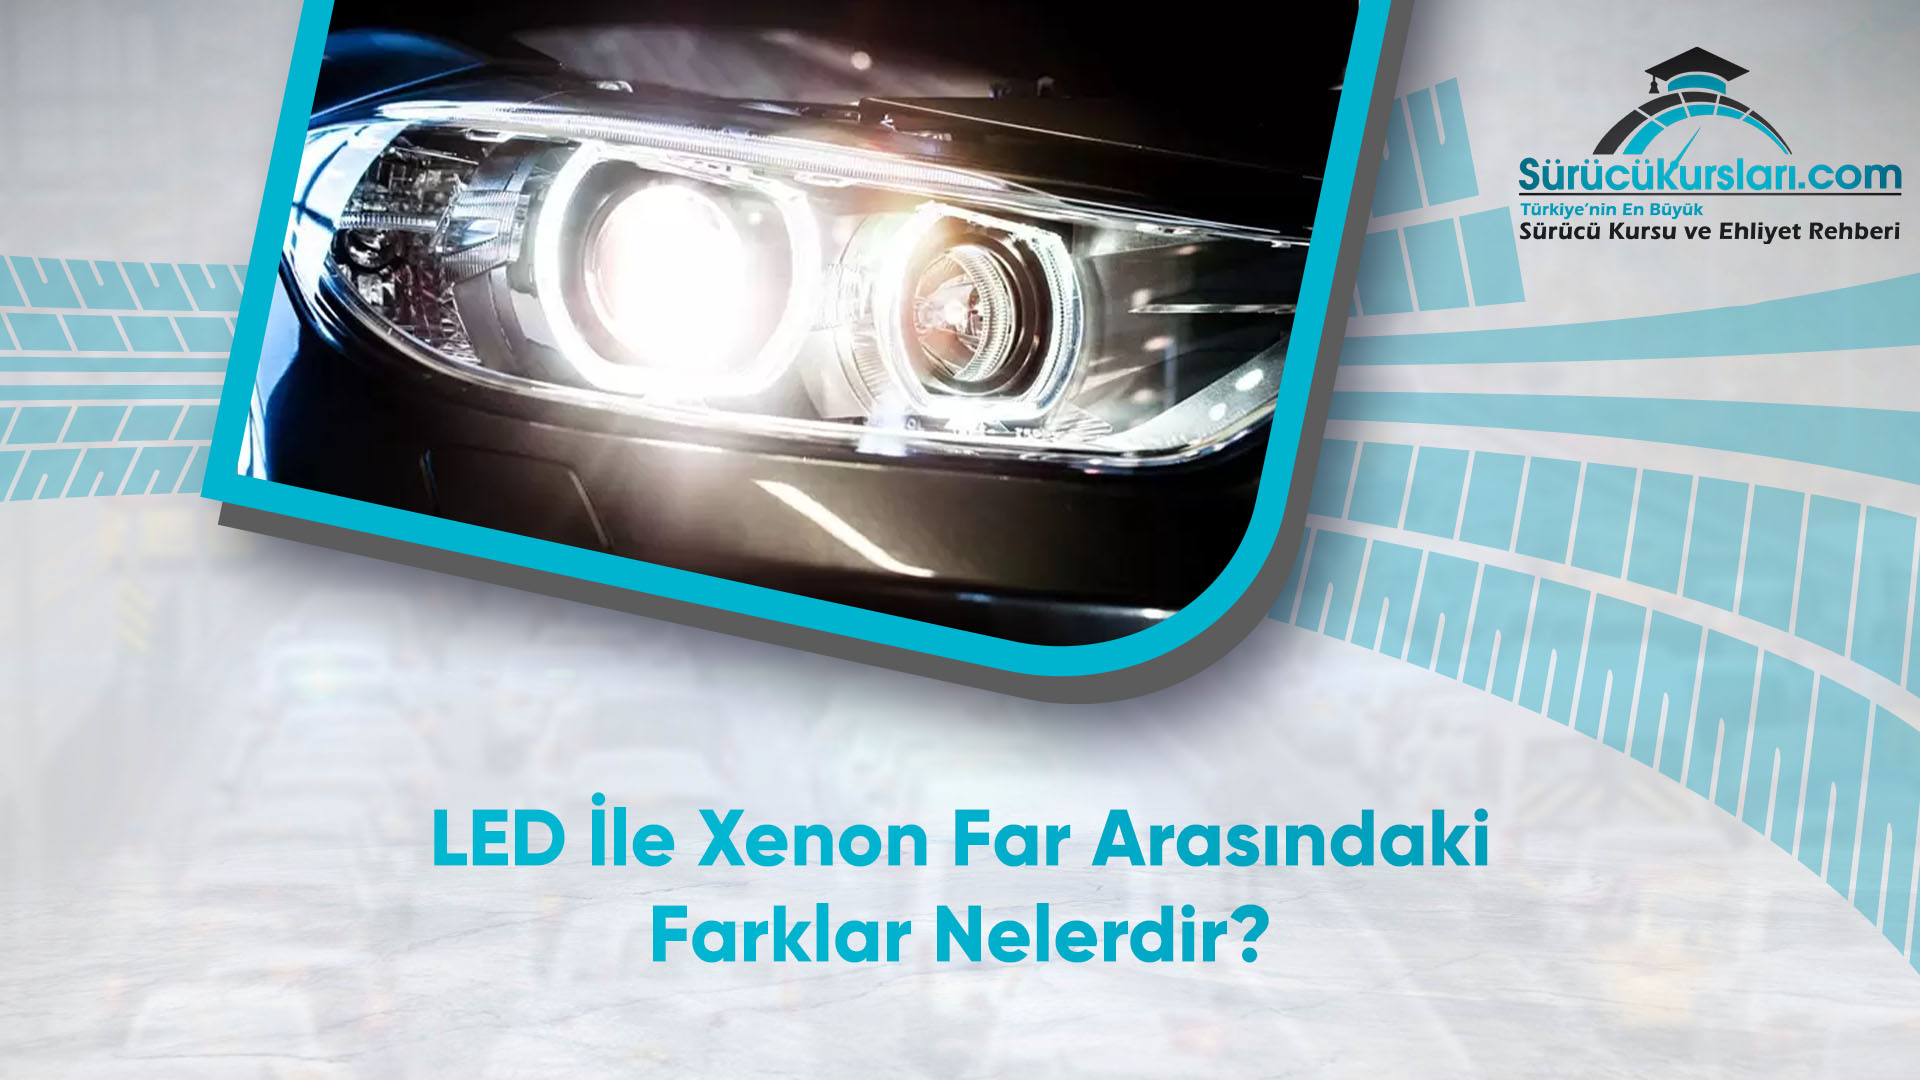 LED İle Xenon Far Arasındaki Farklar Nelerdir